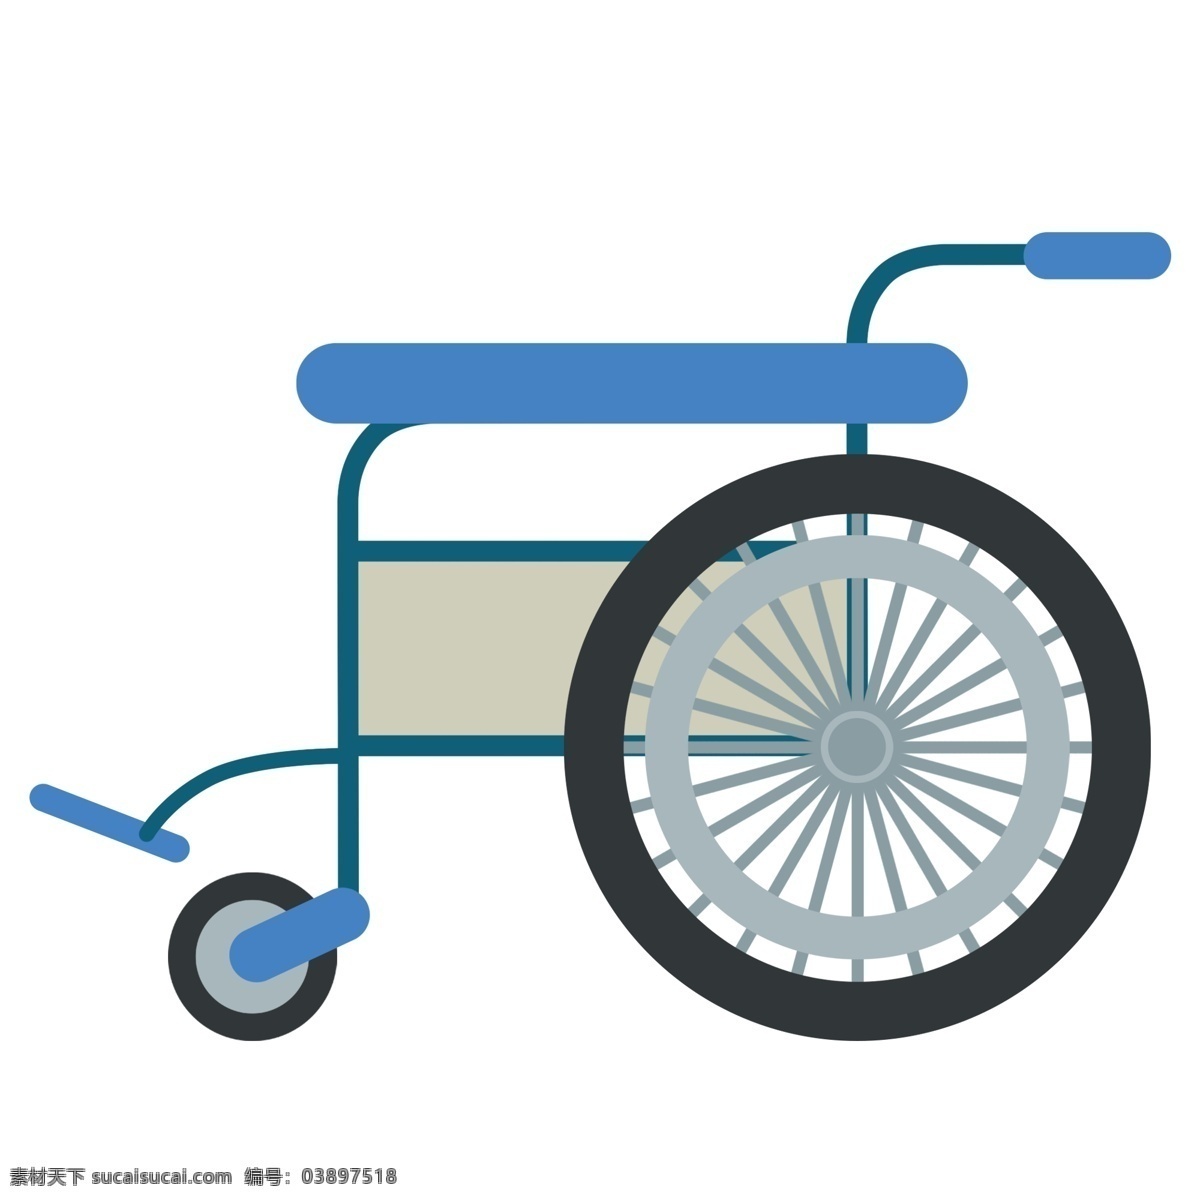 残疾 辅助 轮椅车 残疾病人 医疗用品